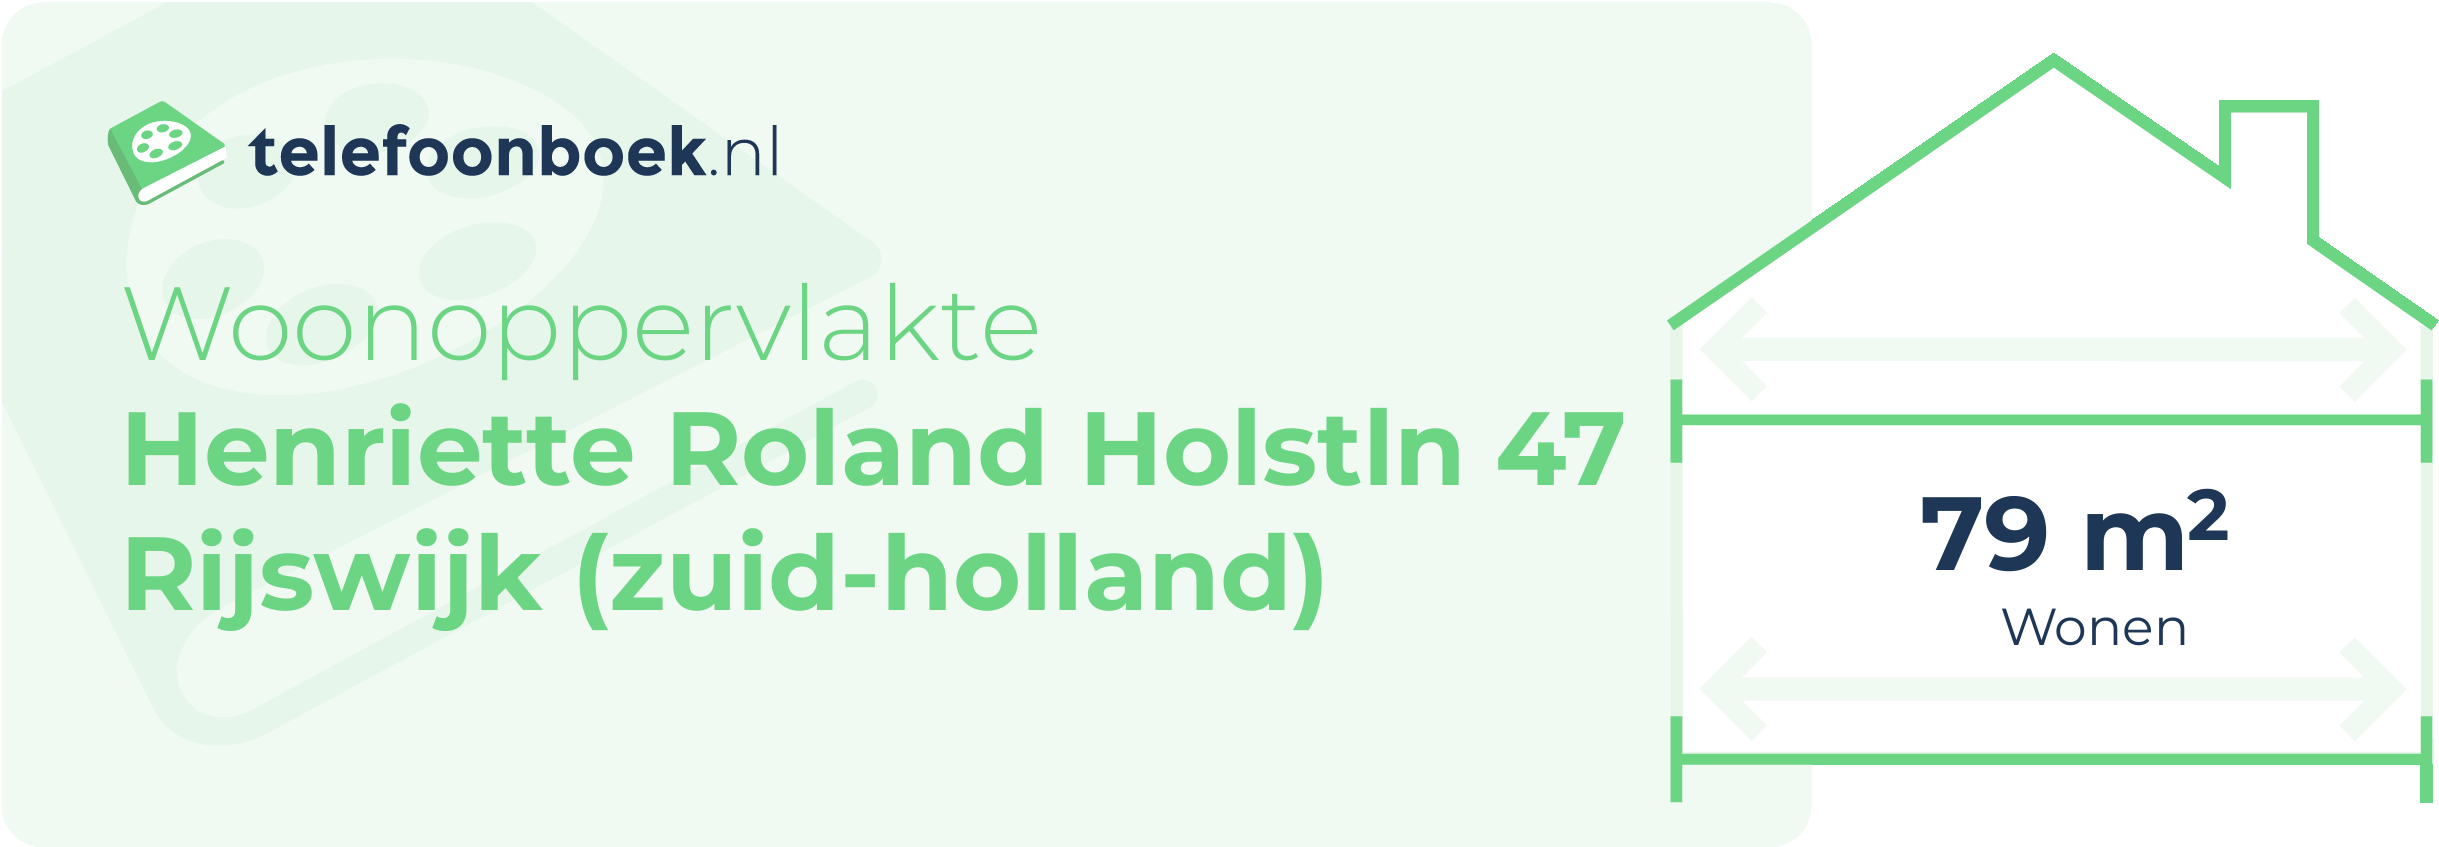 Woonoppervlakte Henriette Roland Holstln 47 Rijswijk (Zuid-Holland)